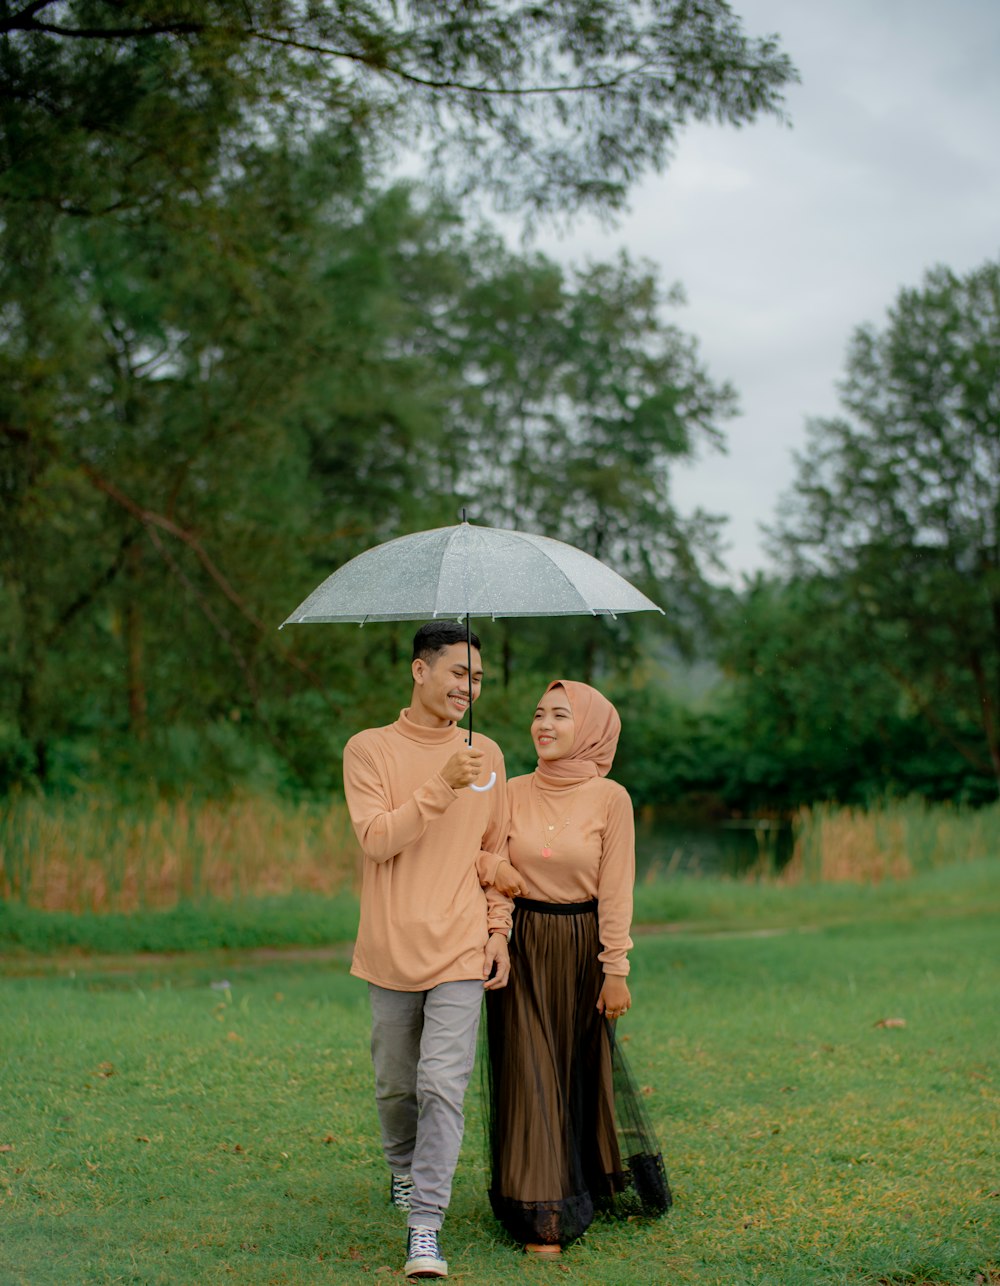 Frau im braunen Mantel mit Regenschirm, die tagsüber auf grünem Grasfeld geht